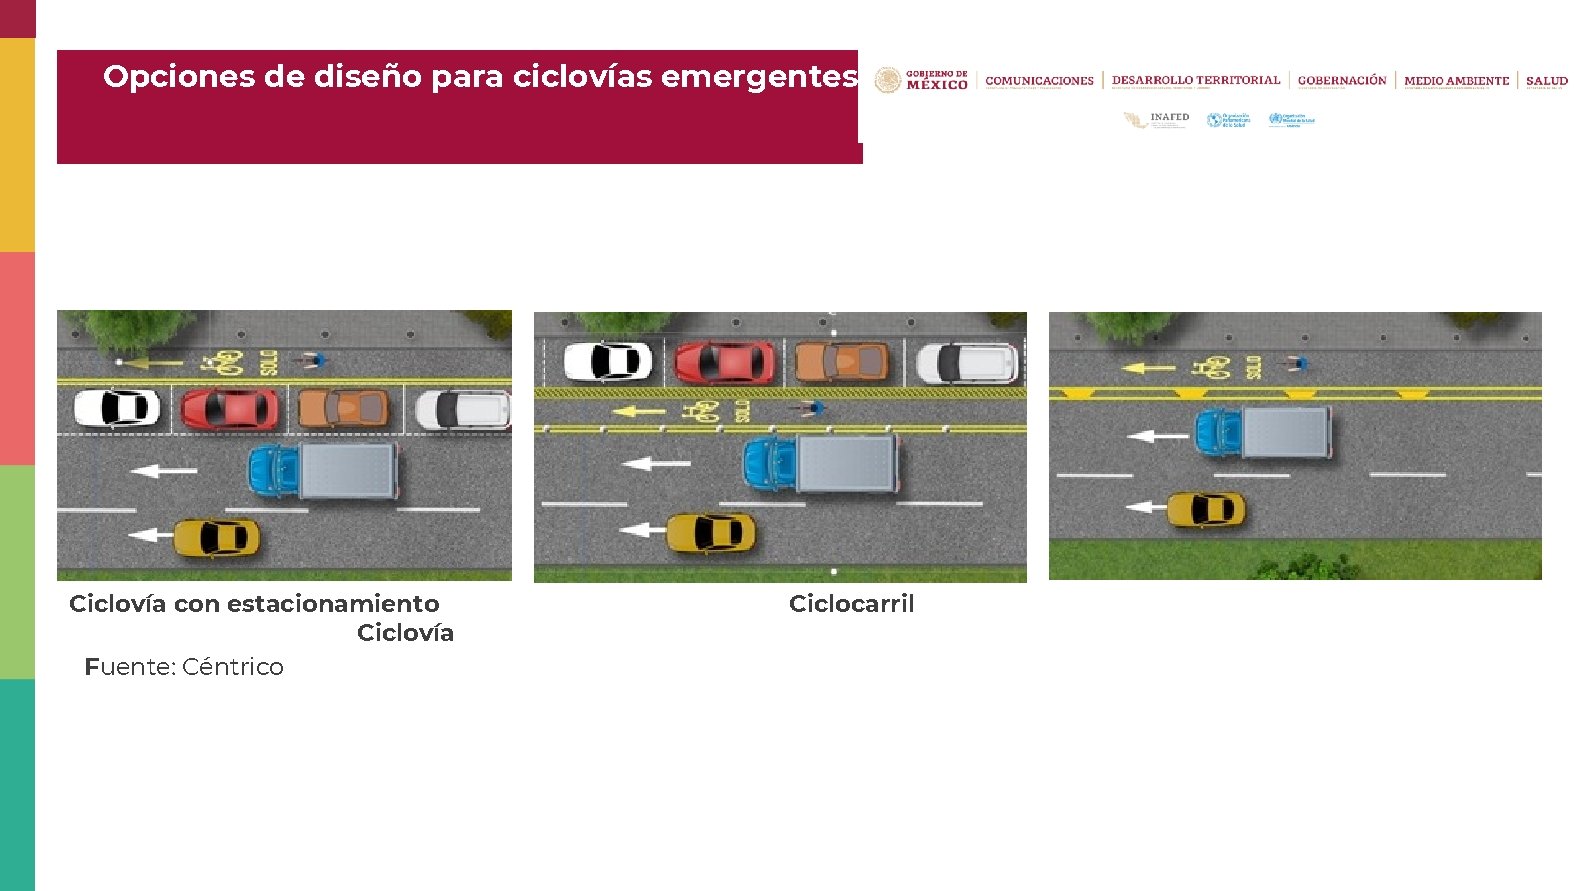 Opciones de diseño para ciclovías emergentes Ciclovía con estacionamiento Ciclovía Fuente: Céntrico Ciclocarril 